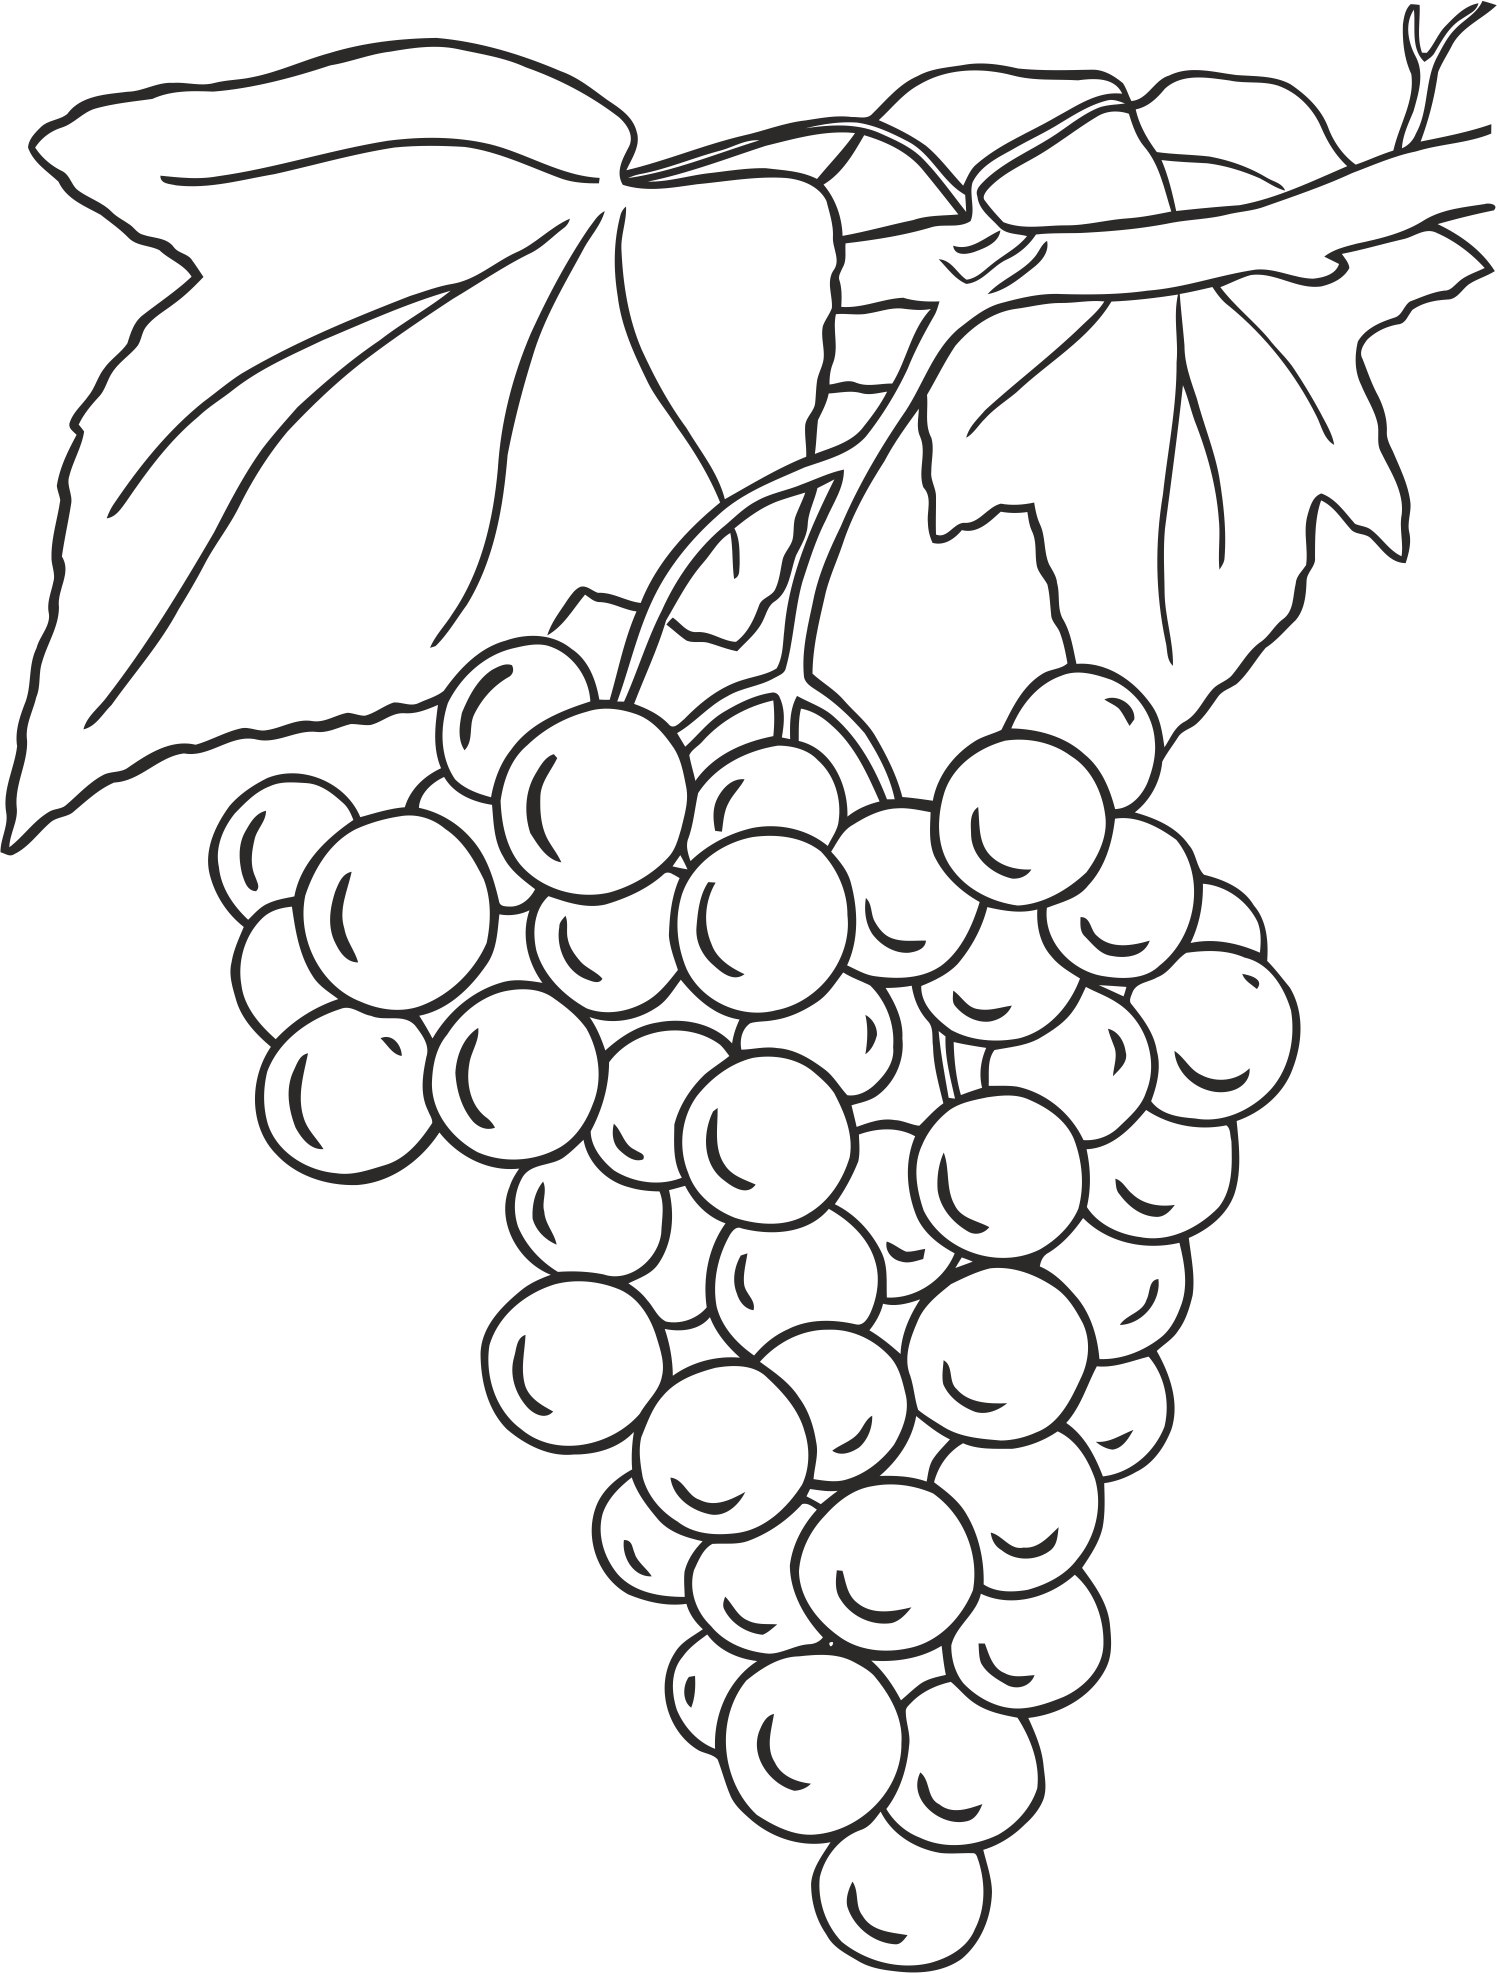 Diseño de uvas